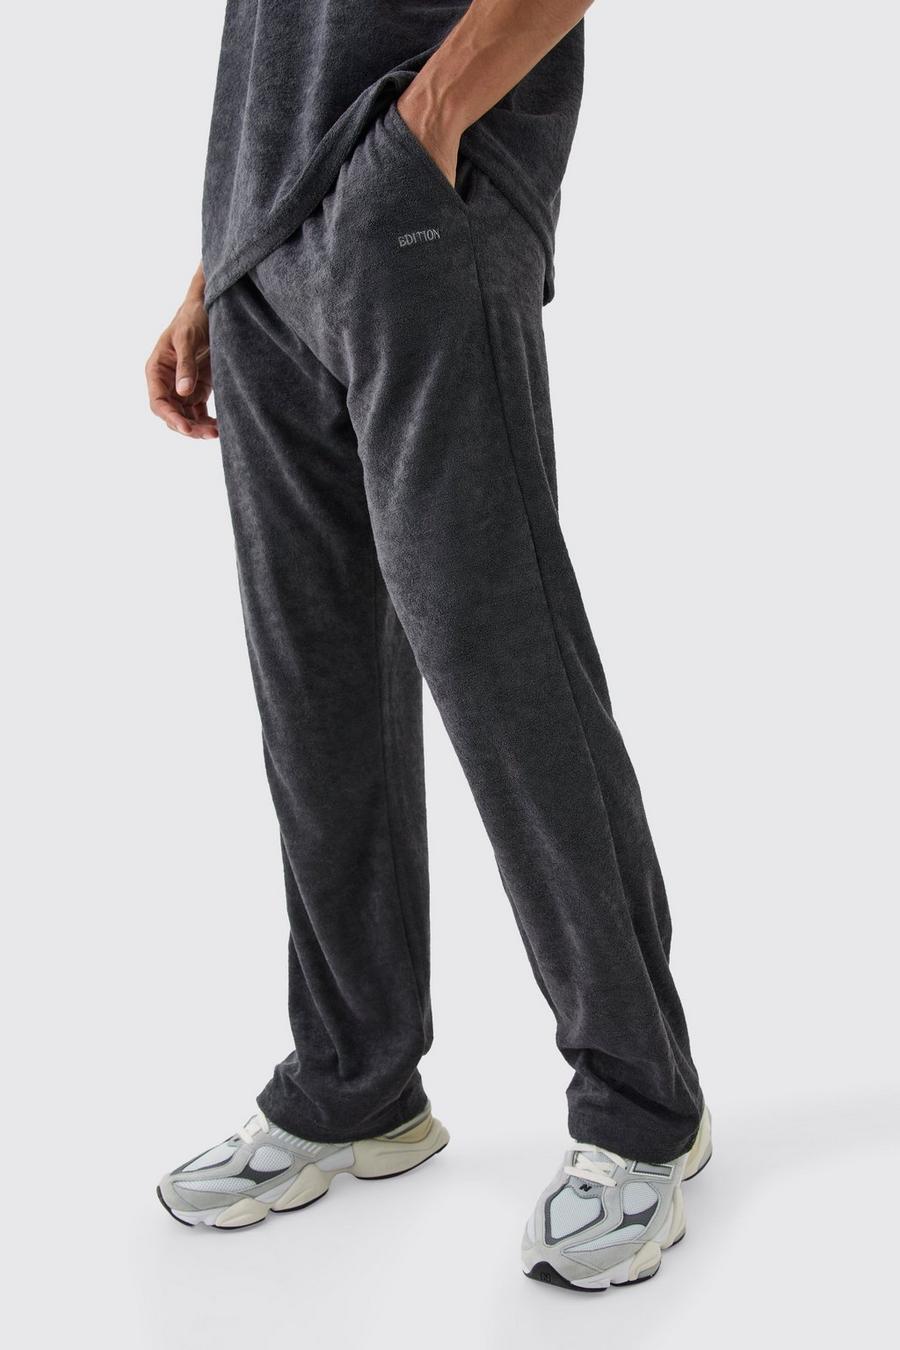 Pantalón deportivo holgado de felpa Edition, Charcoal